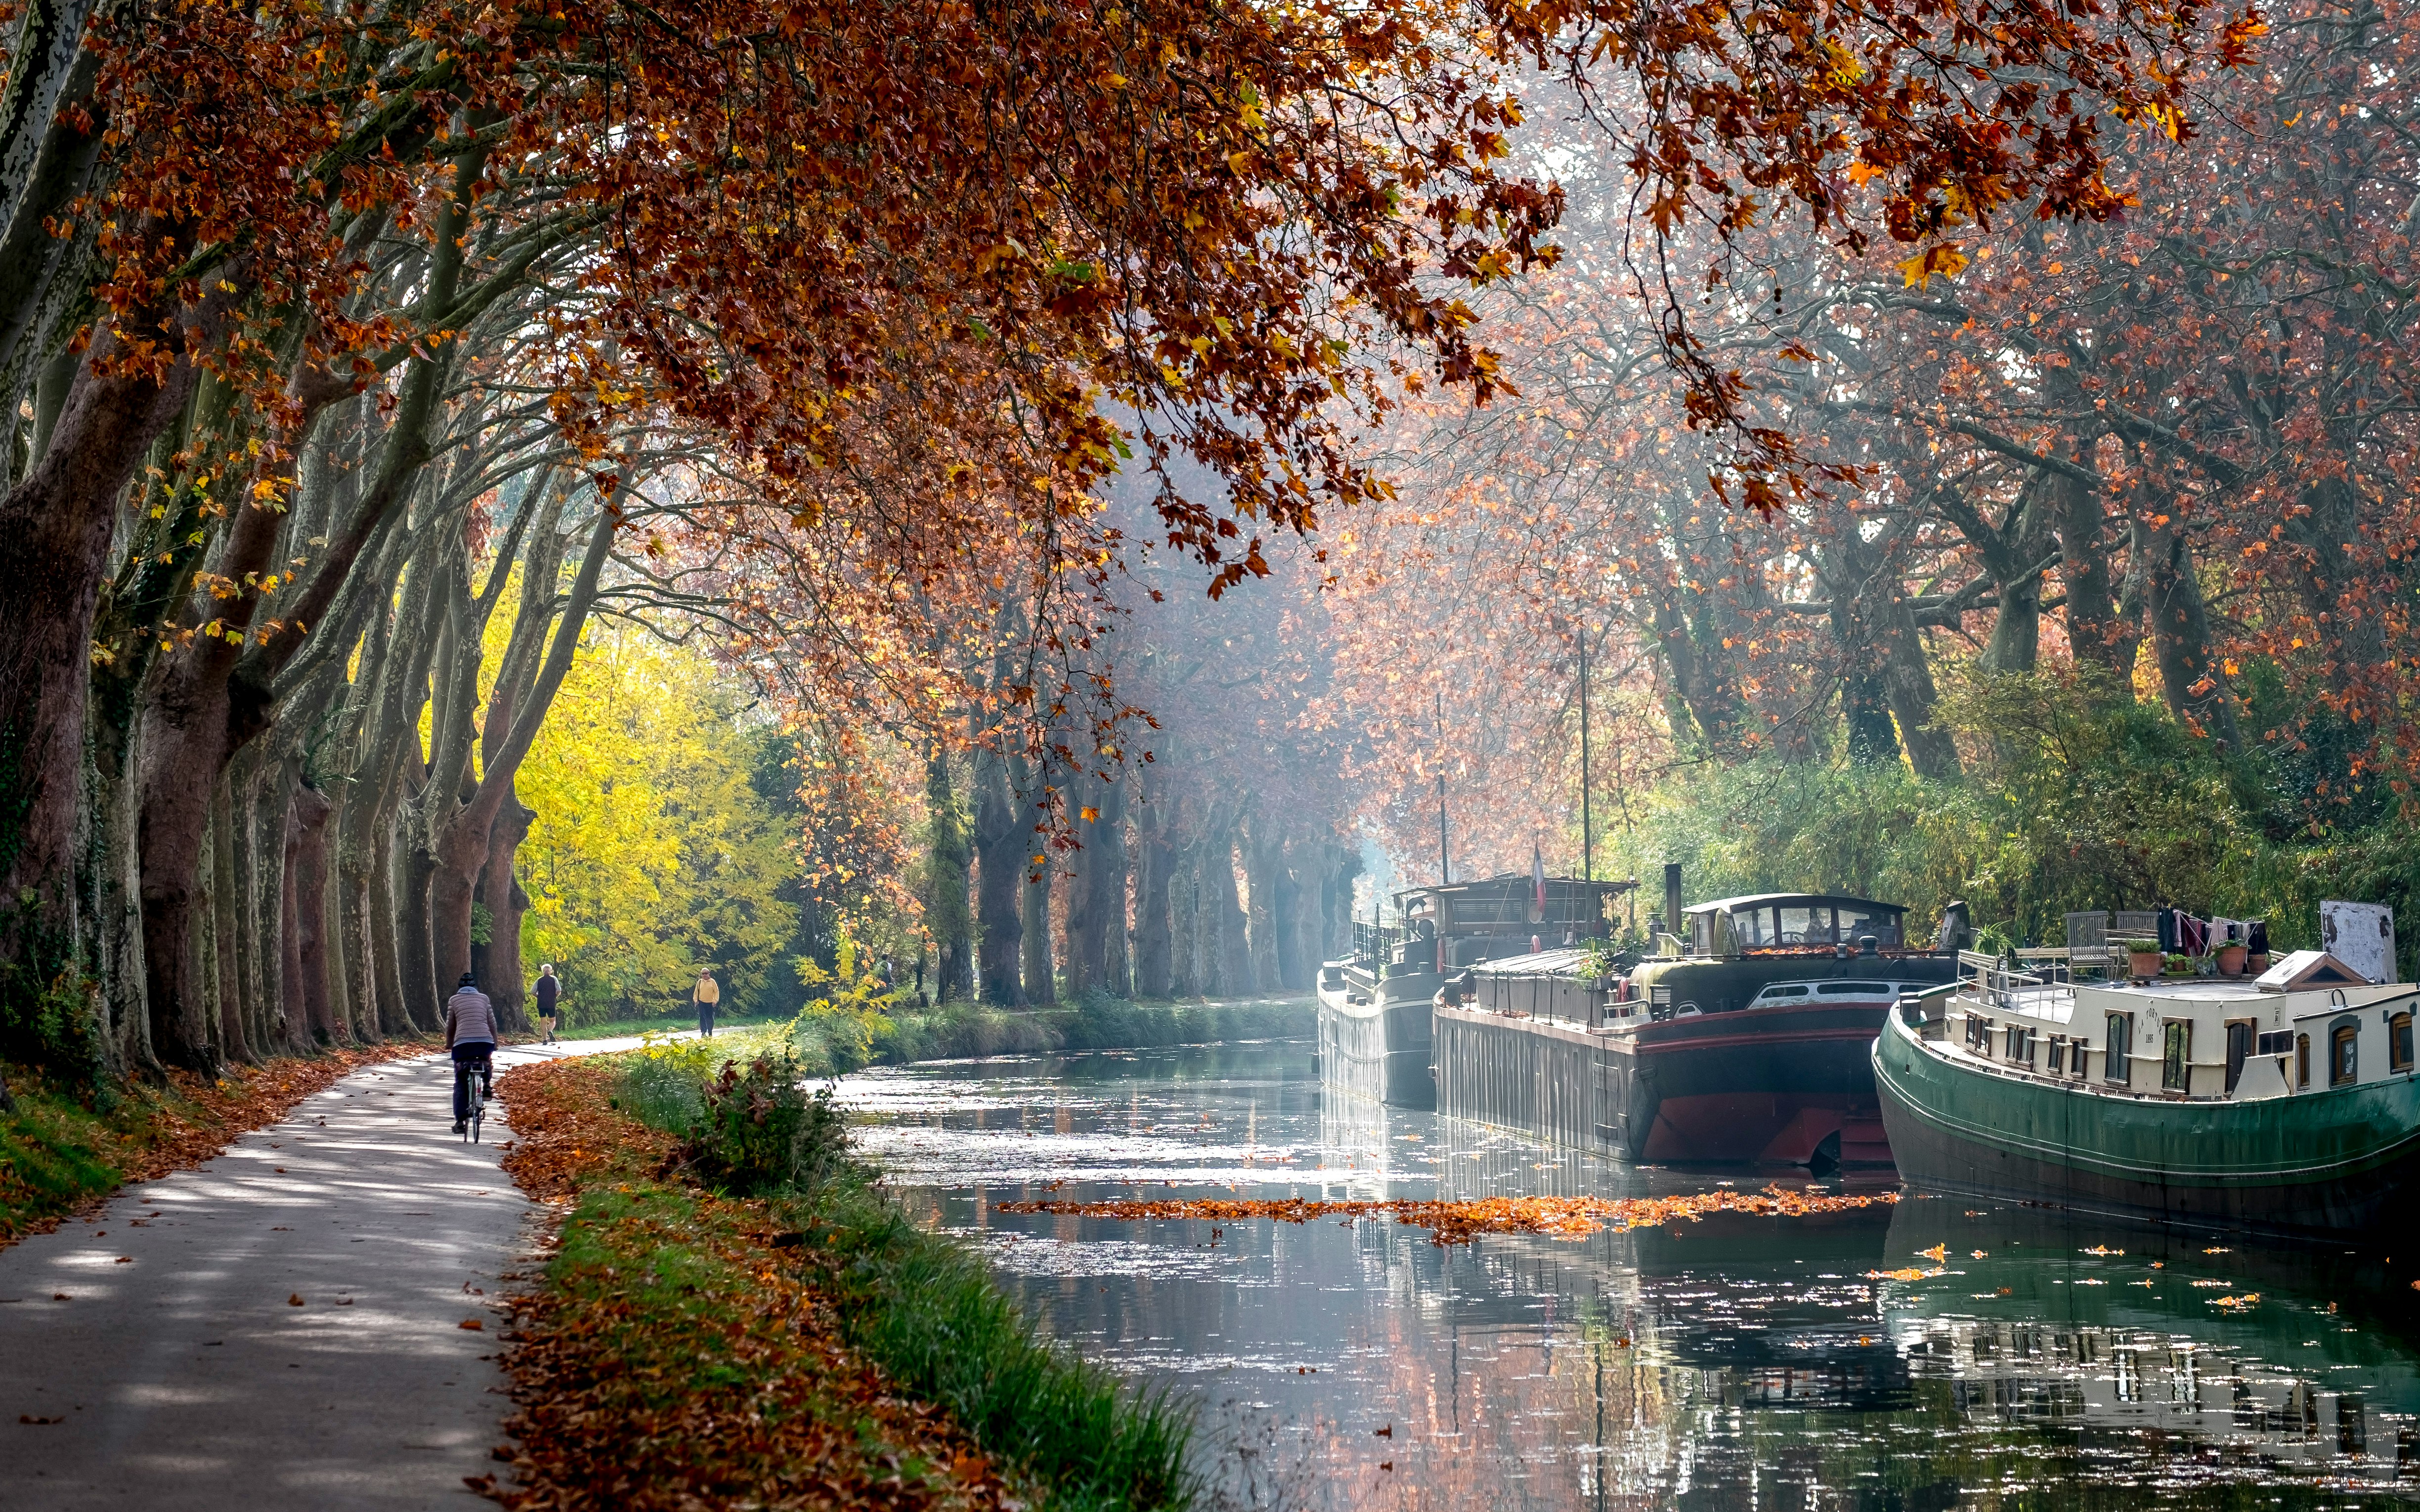 Kanał wodny z łodziami mieszkalnymi jesienią, ścieżka rowerowa